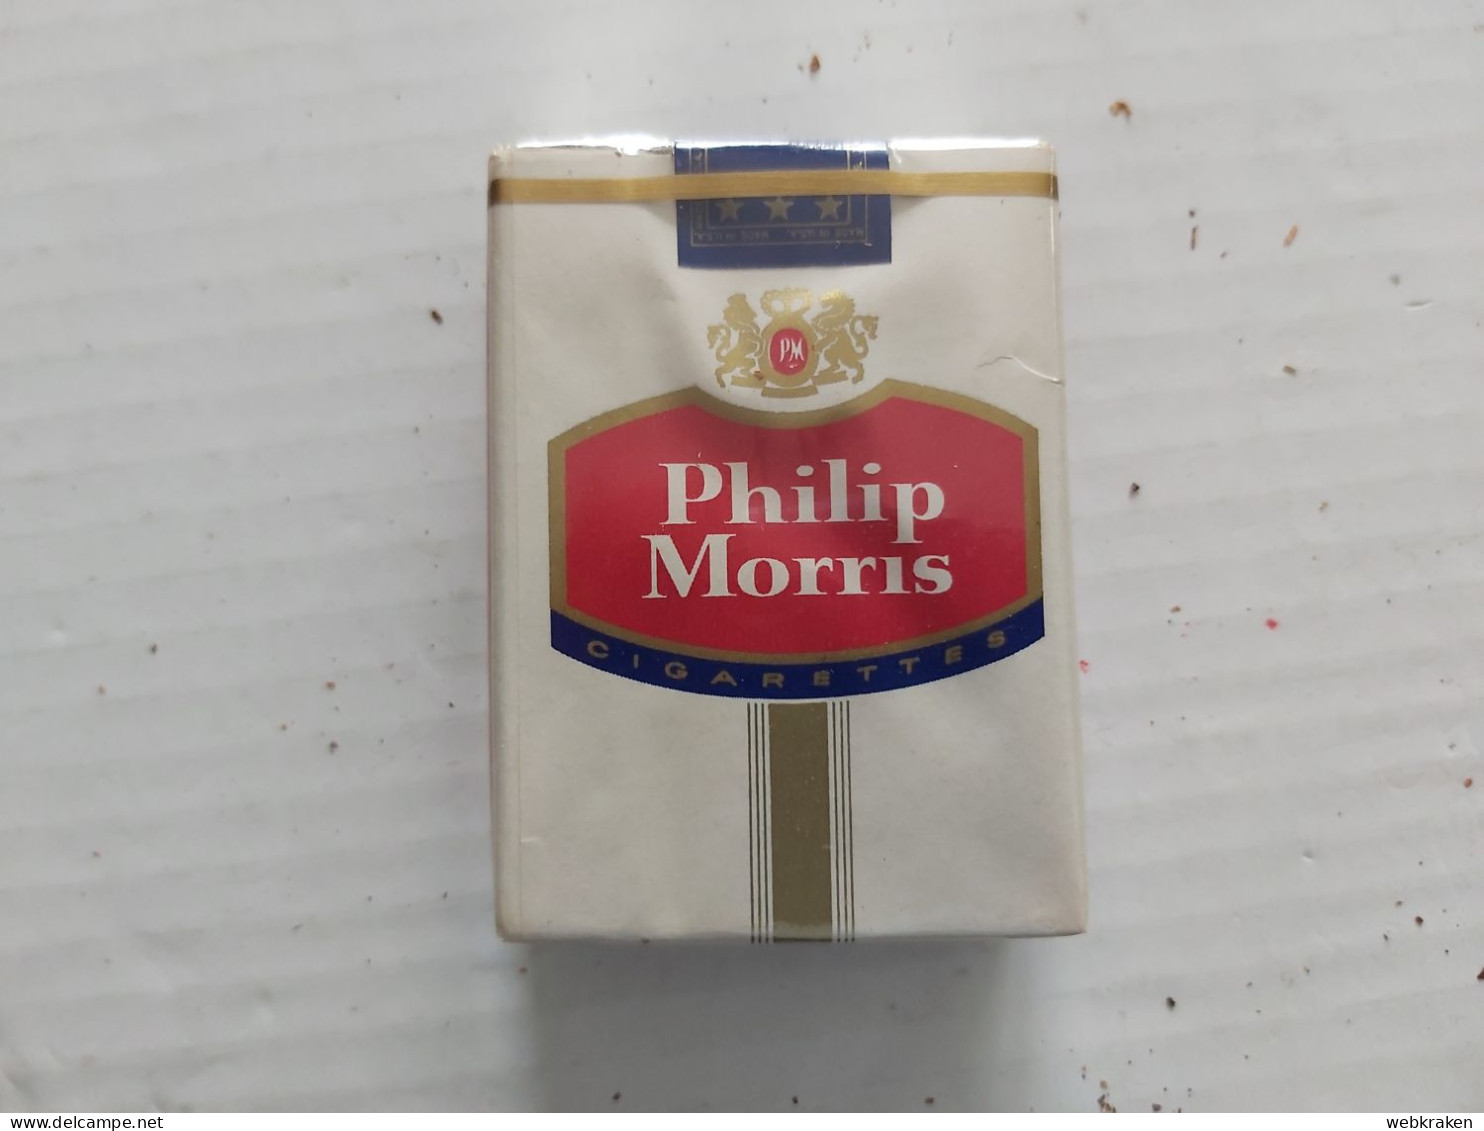 PACCHETTO SIGARETTE PIENO TABACCO FUMO TABACS WITH ORIGINAL CIGARETTES TOBACCO MARCA PHILIP MORRIS U.S.A. CON SIGARETTE - Fuma Sigarette